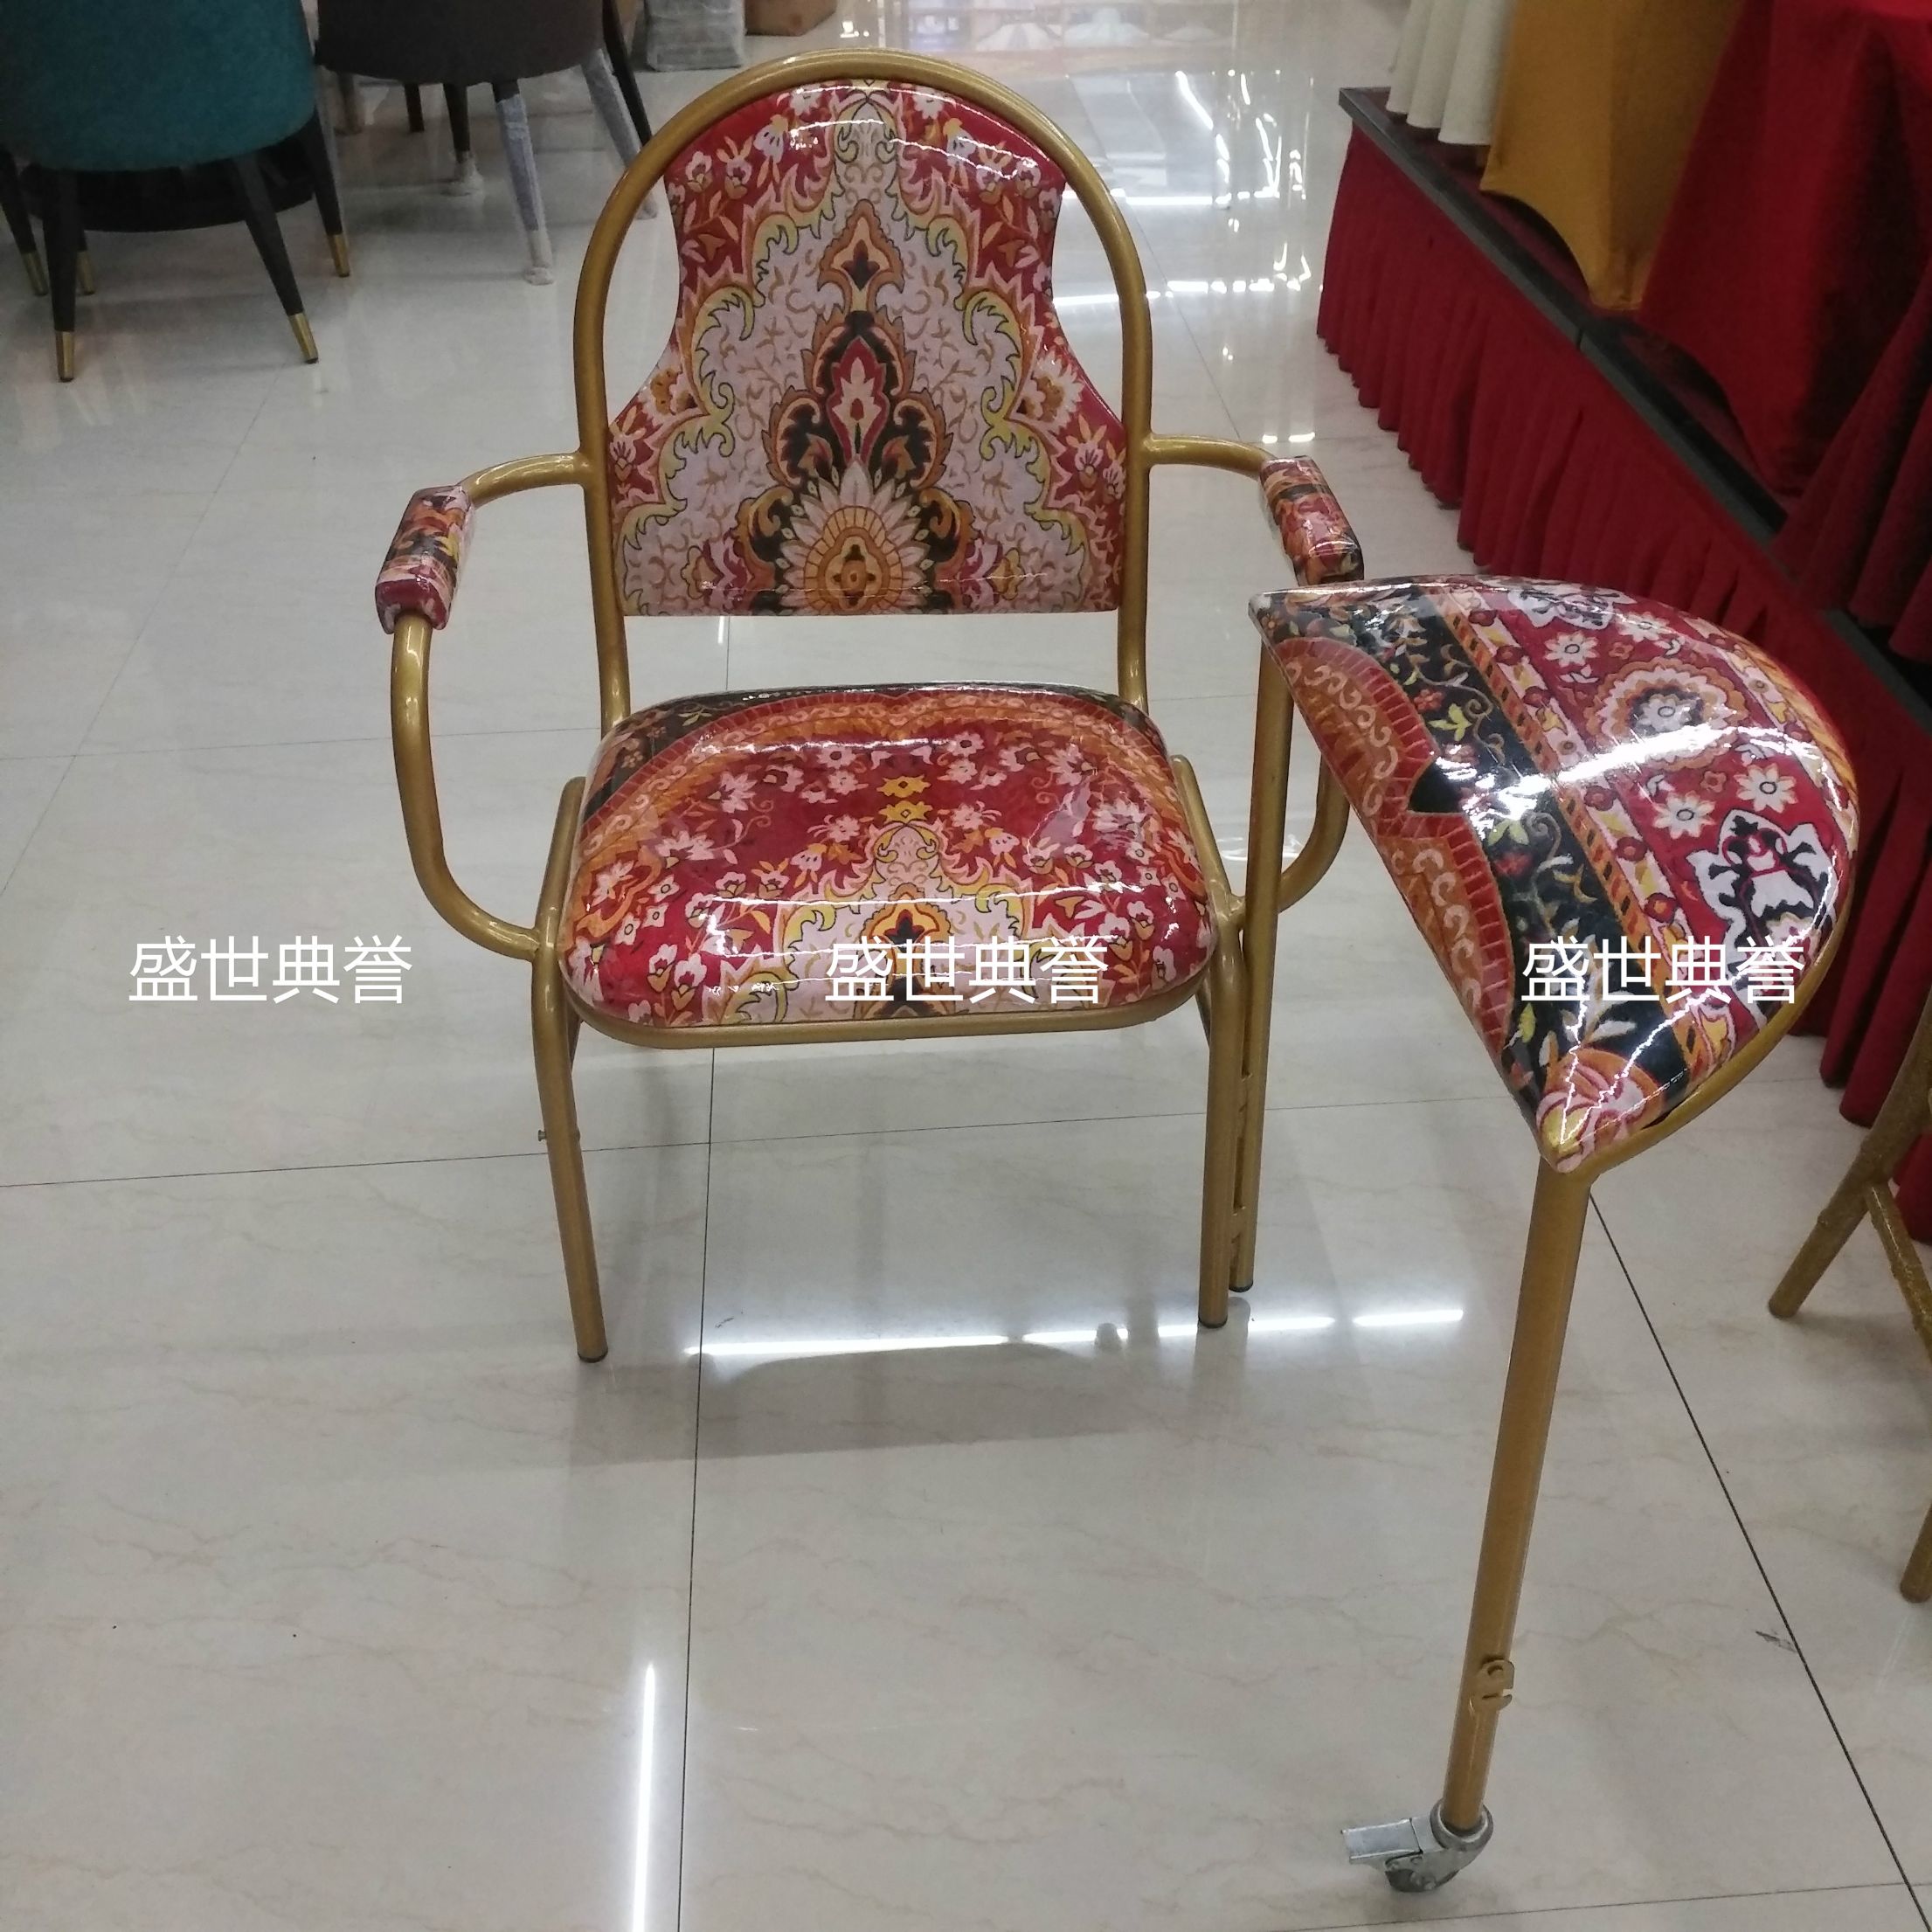 北京出口中东外贸教堂椅祷告椅礼拜椅朝拜椅礼堂椅祈祷椅老人椅详情图1